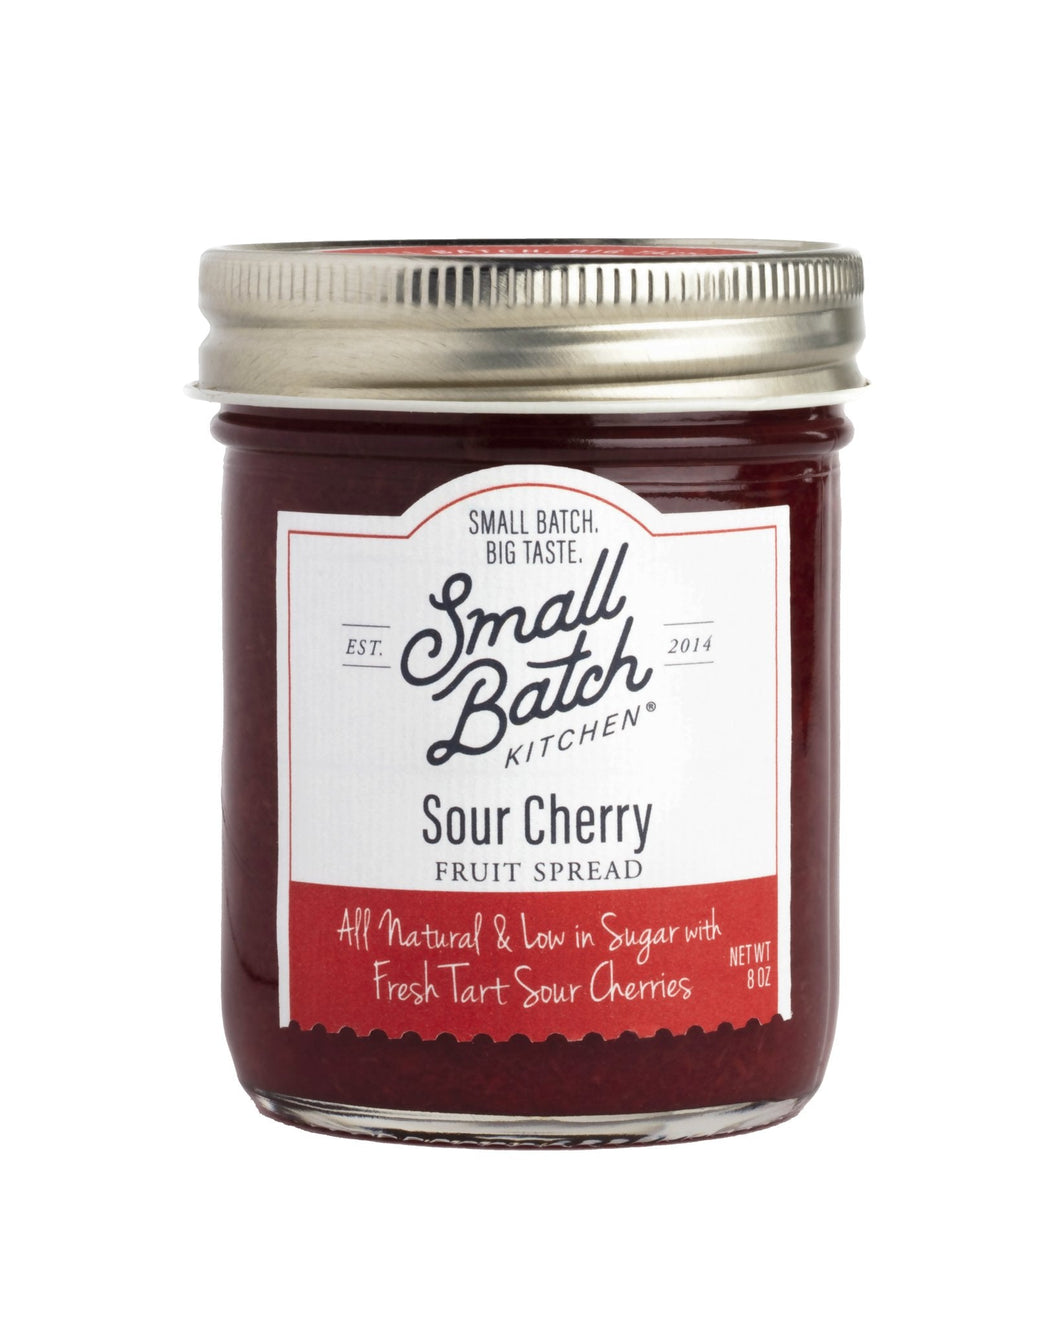 Small Batch Kitchen Sour Cherry Fruit Spread Jars - 6 jars x 8 oz